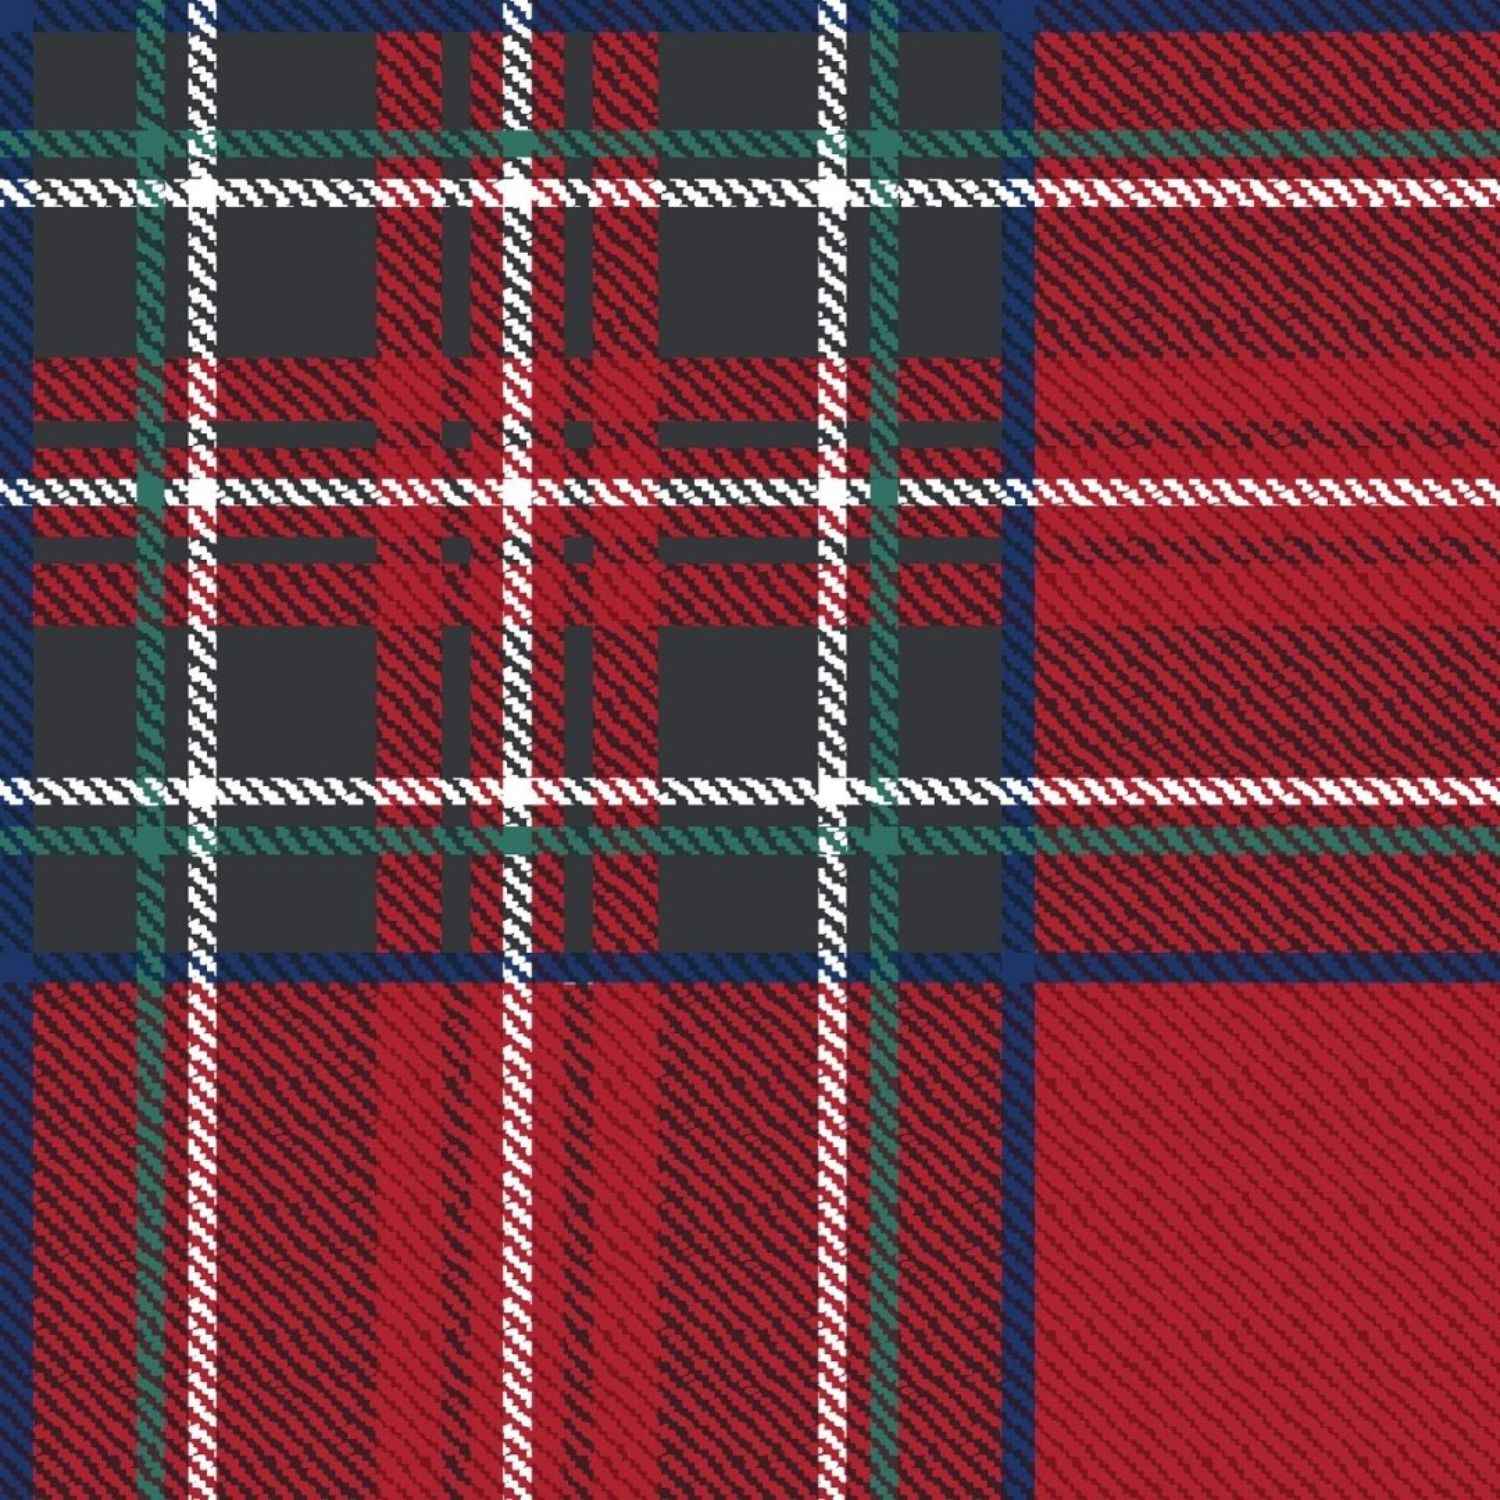 kilt-rosso-copritutto-telo-arredo-tuttofare-scozzese-classico-invernale-quadri-tartan-rosso-verde-scuro-pattern